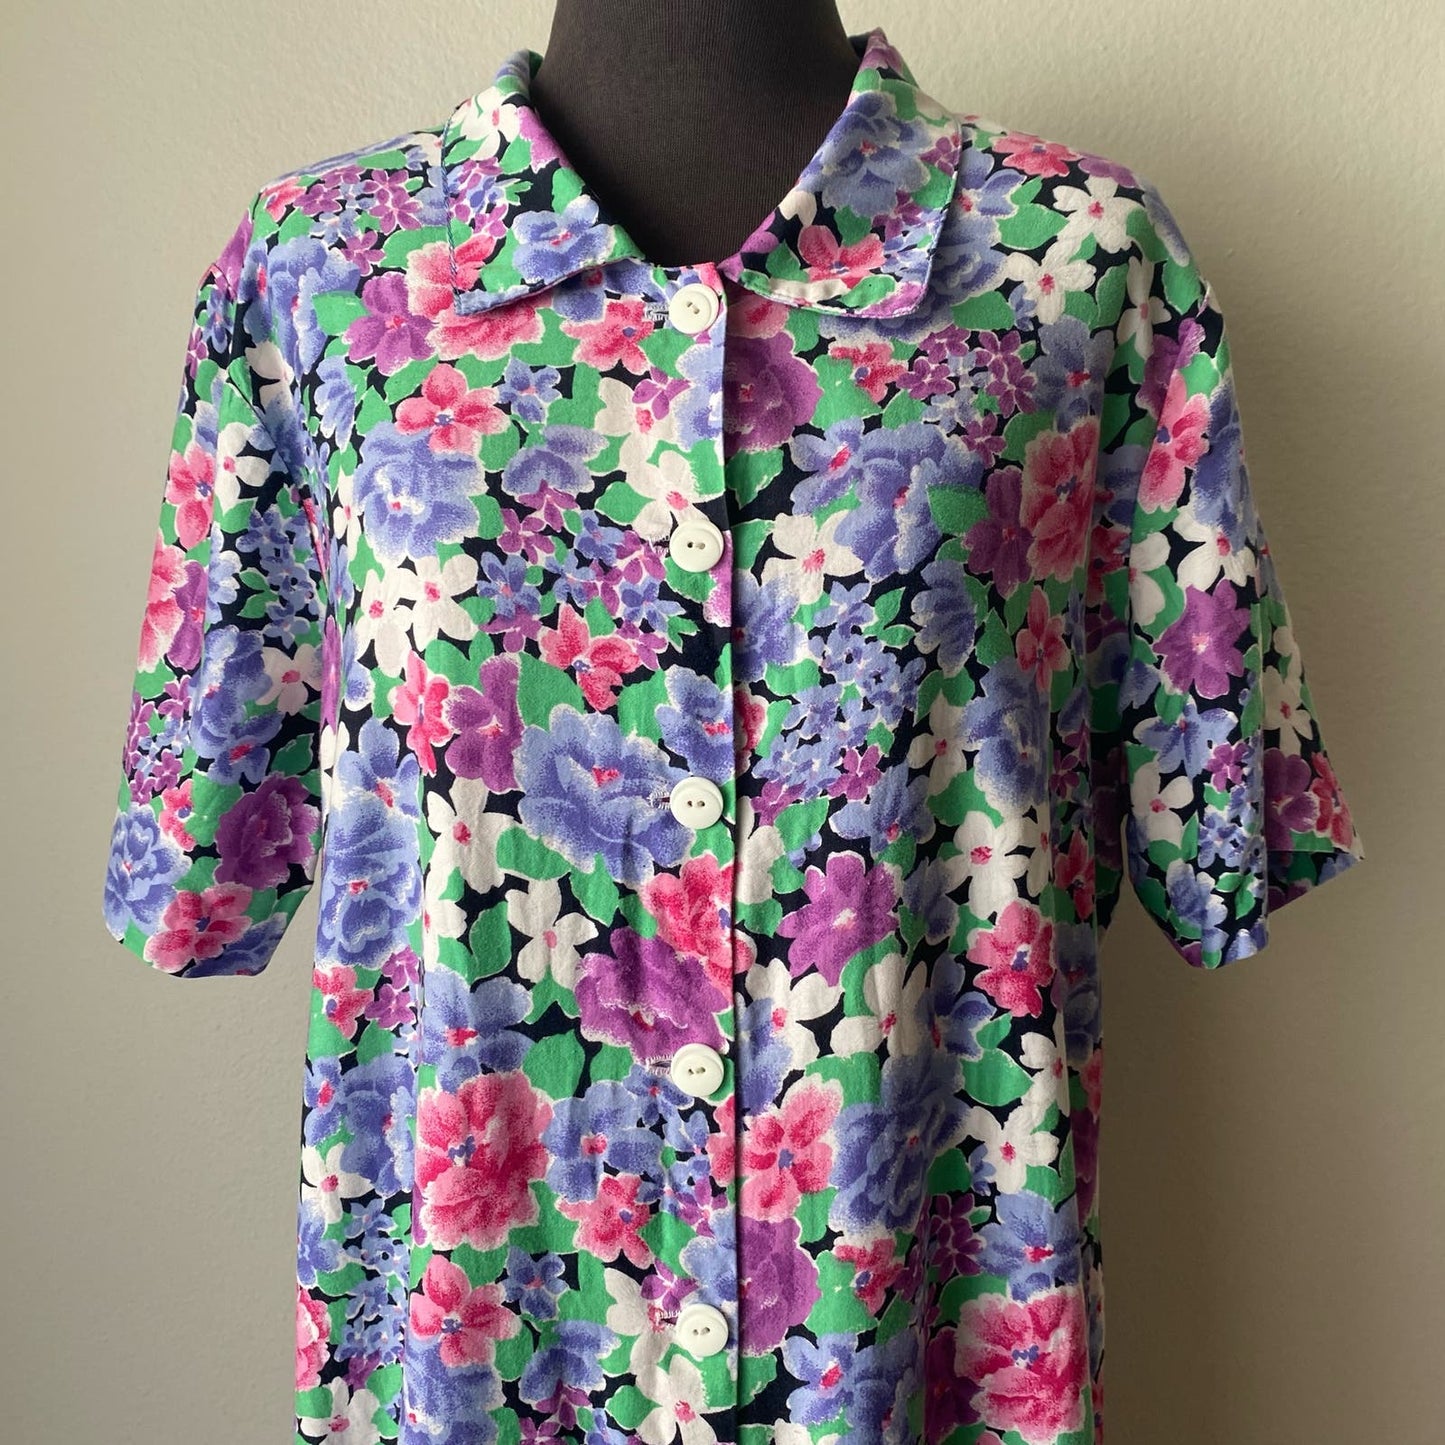 Vintage sz XL floral pleated cottage prairie shift dress